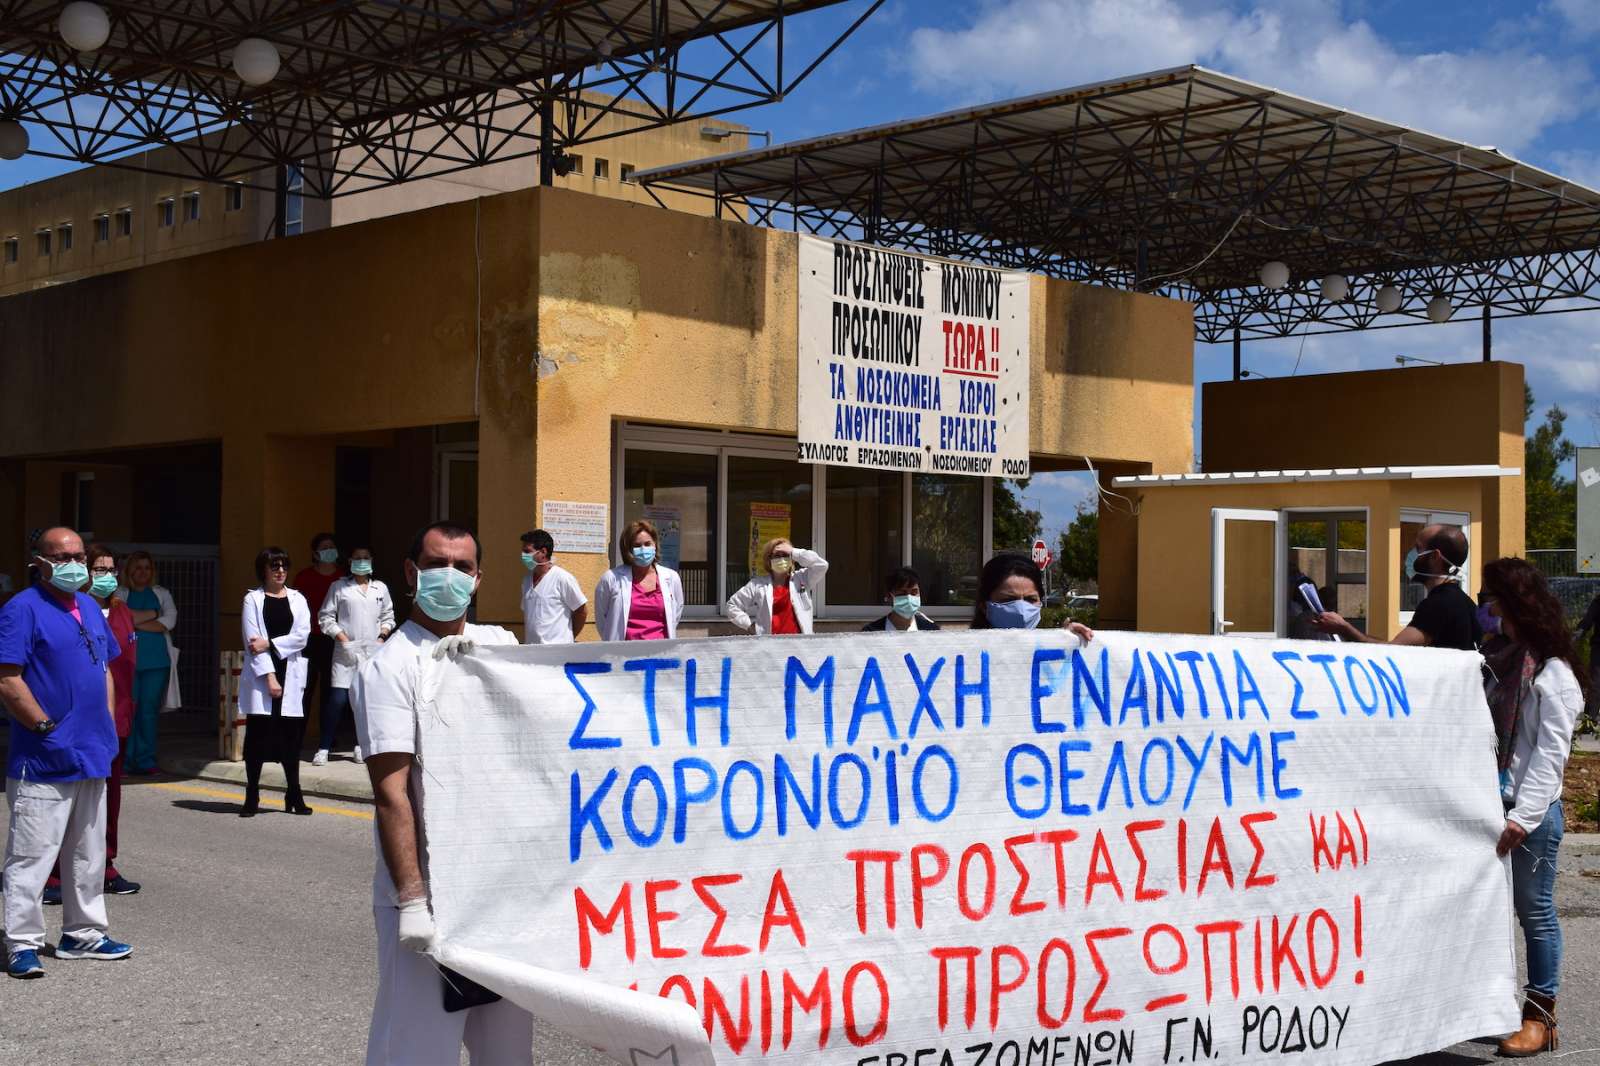 Εργατικό Κέντρο Ρόδου: "Συγκέντρωση διαμαρτυρίας έξω από το Nοσοκομείο Ρόδου"